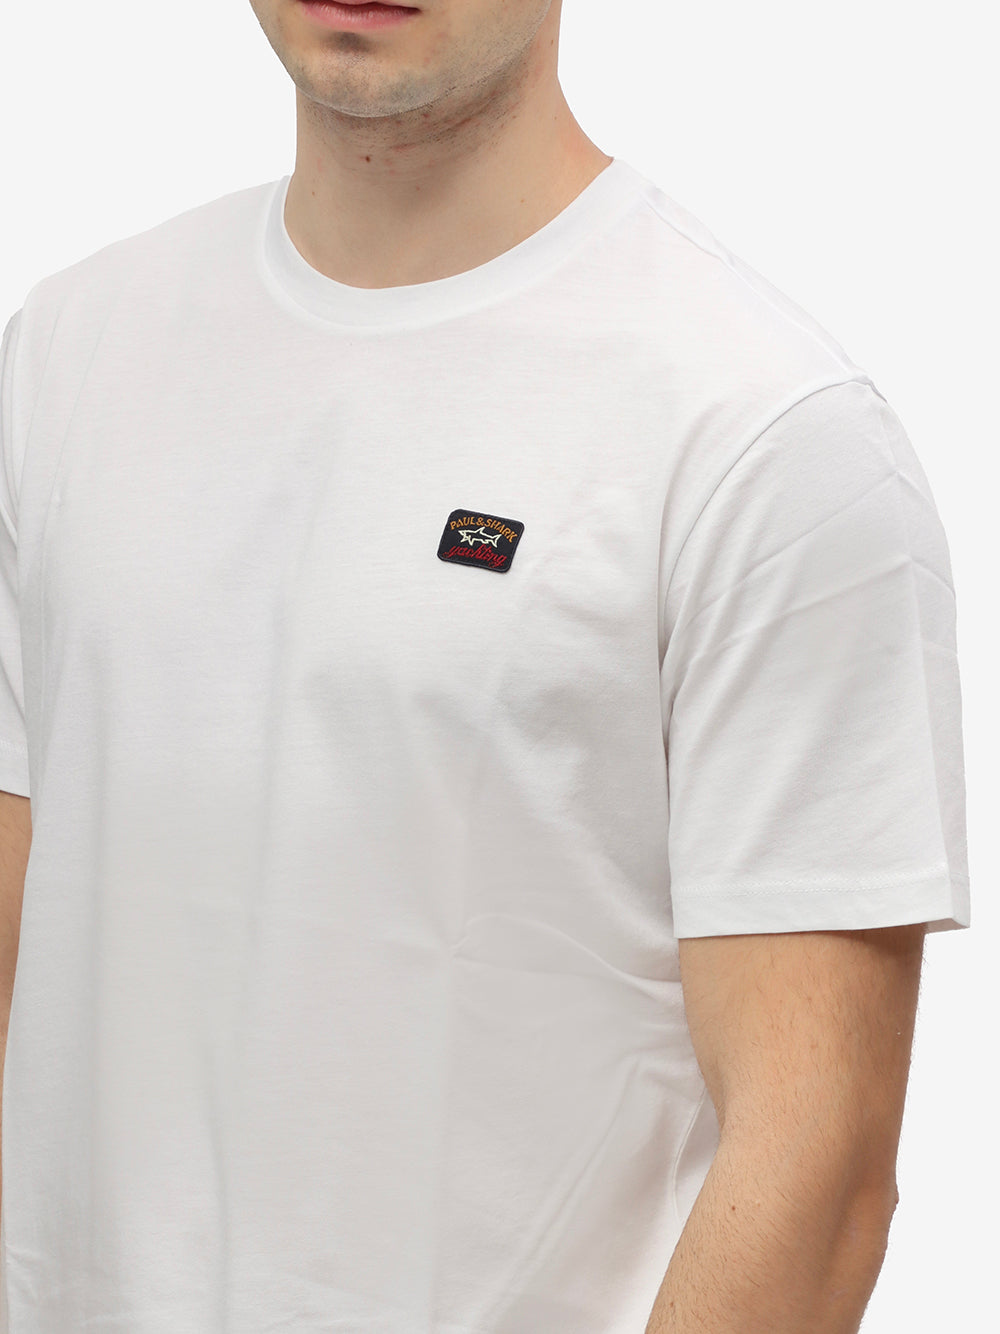 PAUL & SHARK T-Shirt Uomo Cotone Patch Logo-Bianco